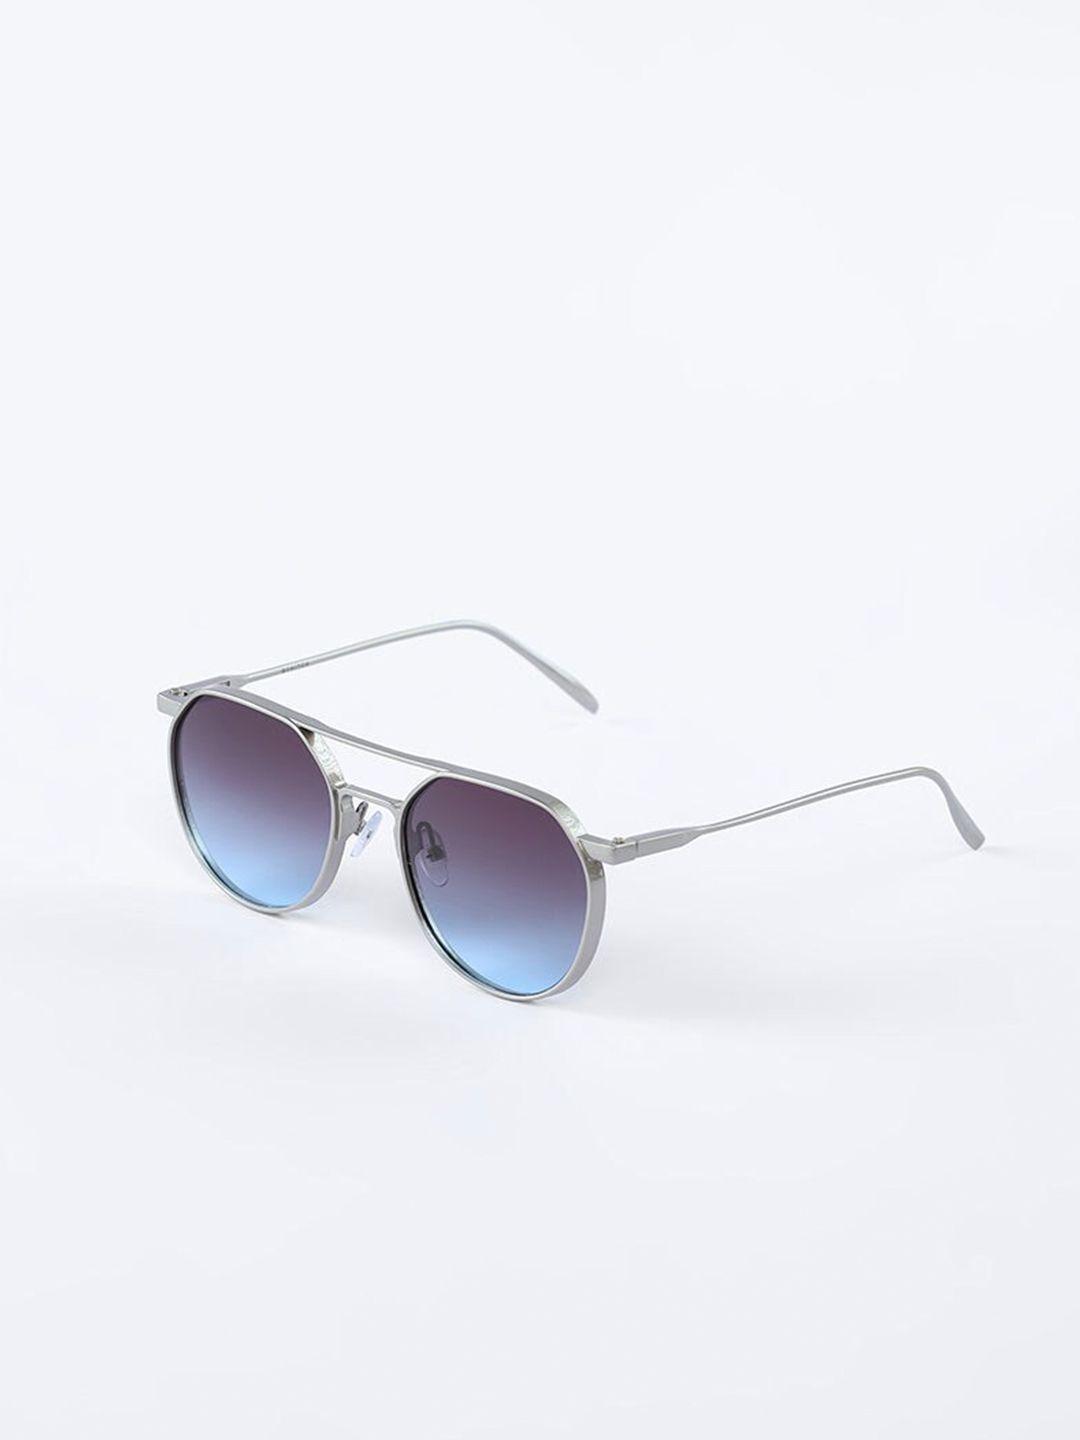 Snitch Men Blue Aviator Sunglasses UV Protected Lens Sunglasses